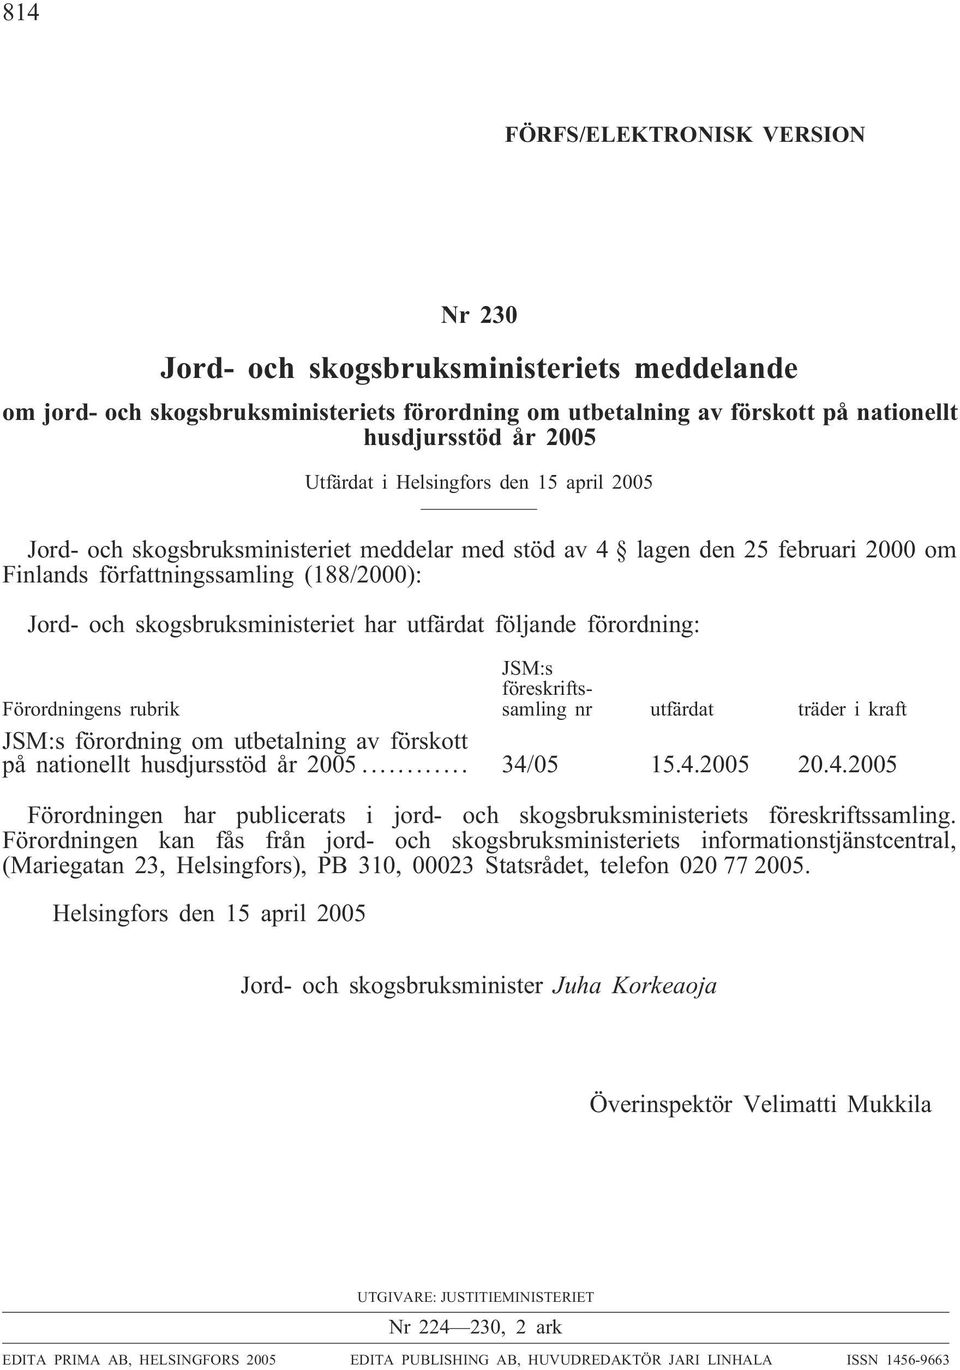 utfärdat följande förordning: Förordningens rubrik JSM:s föreskriftssamling nr utfärdat träder i kraft JSM:s förordning om utbetalning av förskott på nationellt husdjursstöd år 2005... 34/05 15.4.2005 20.